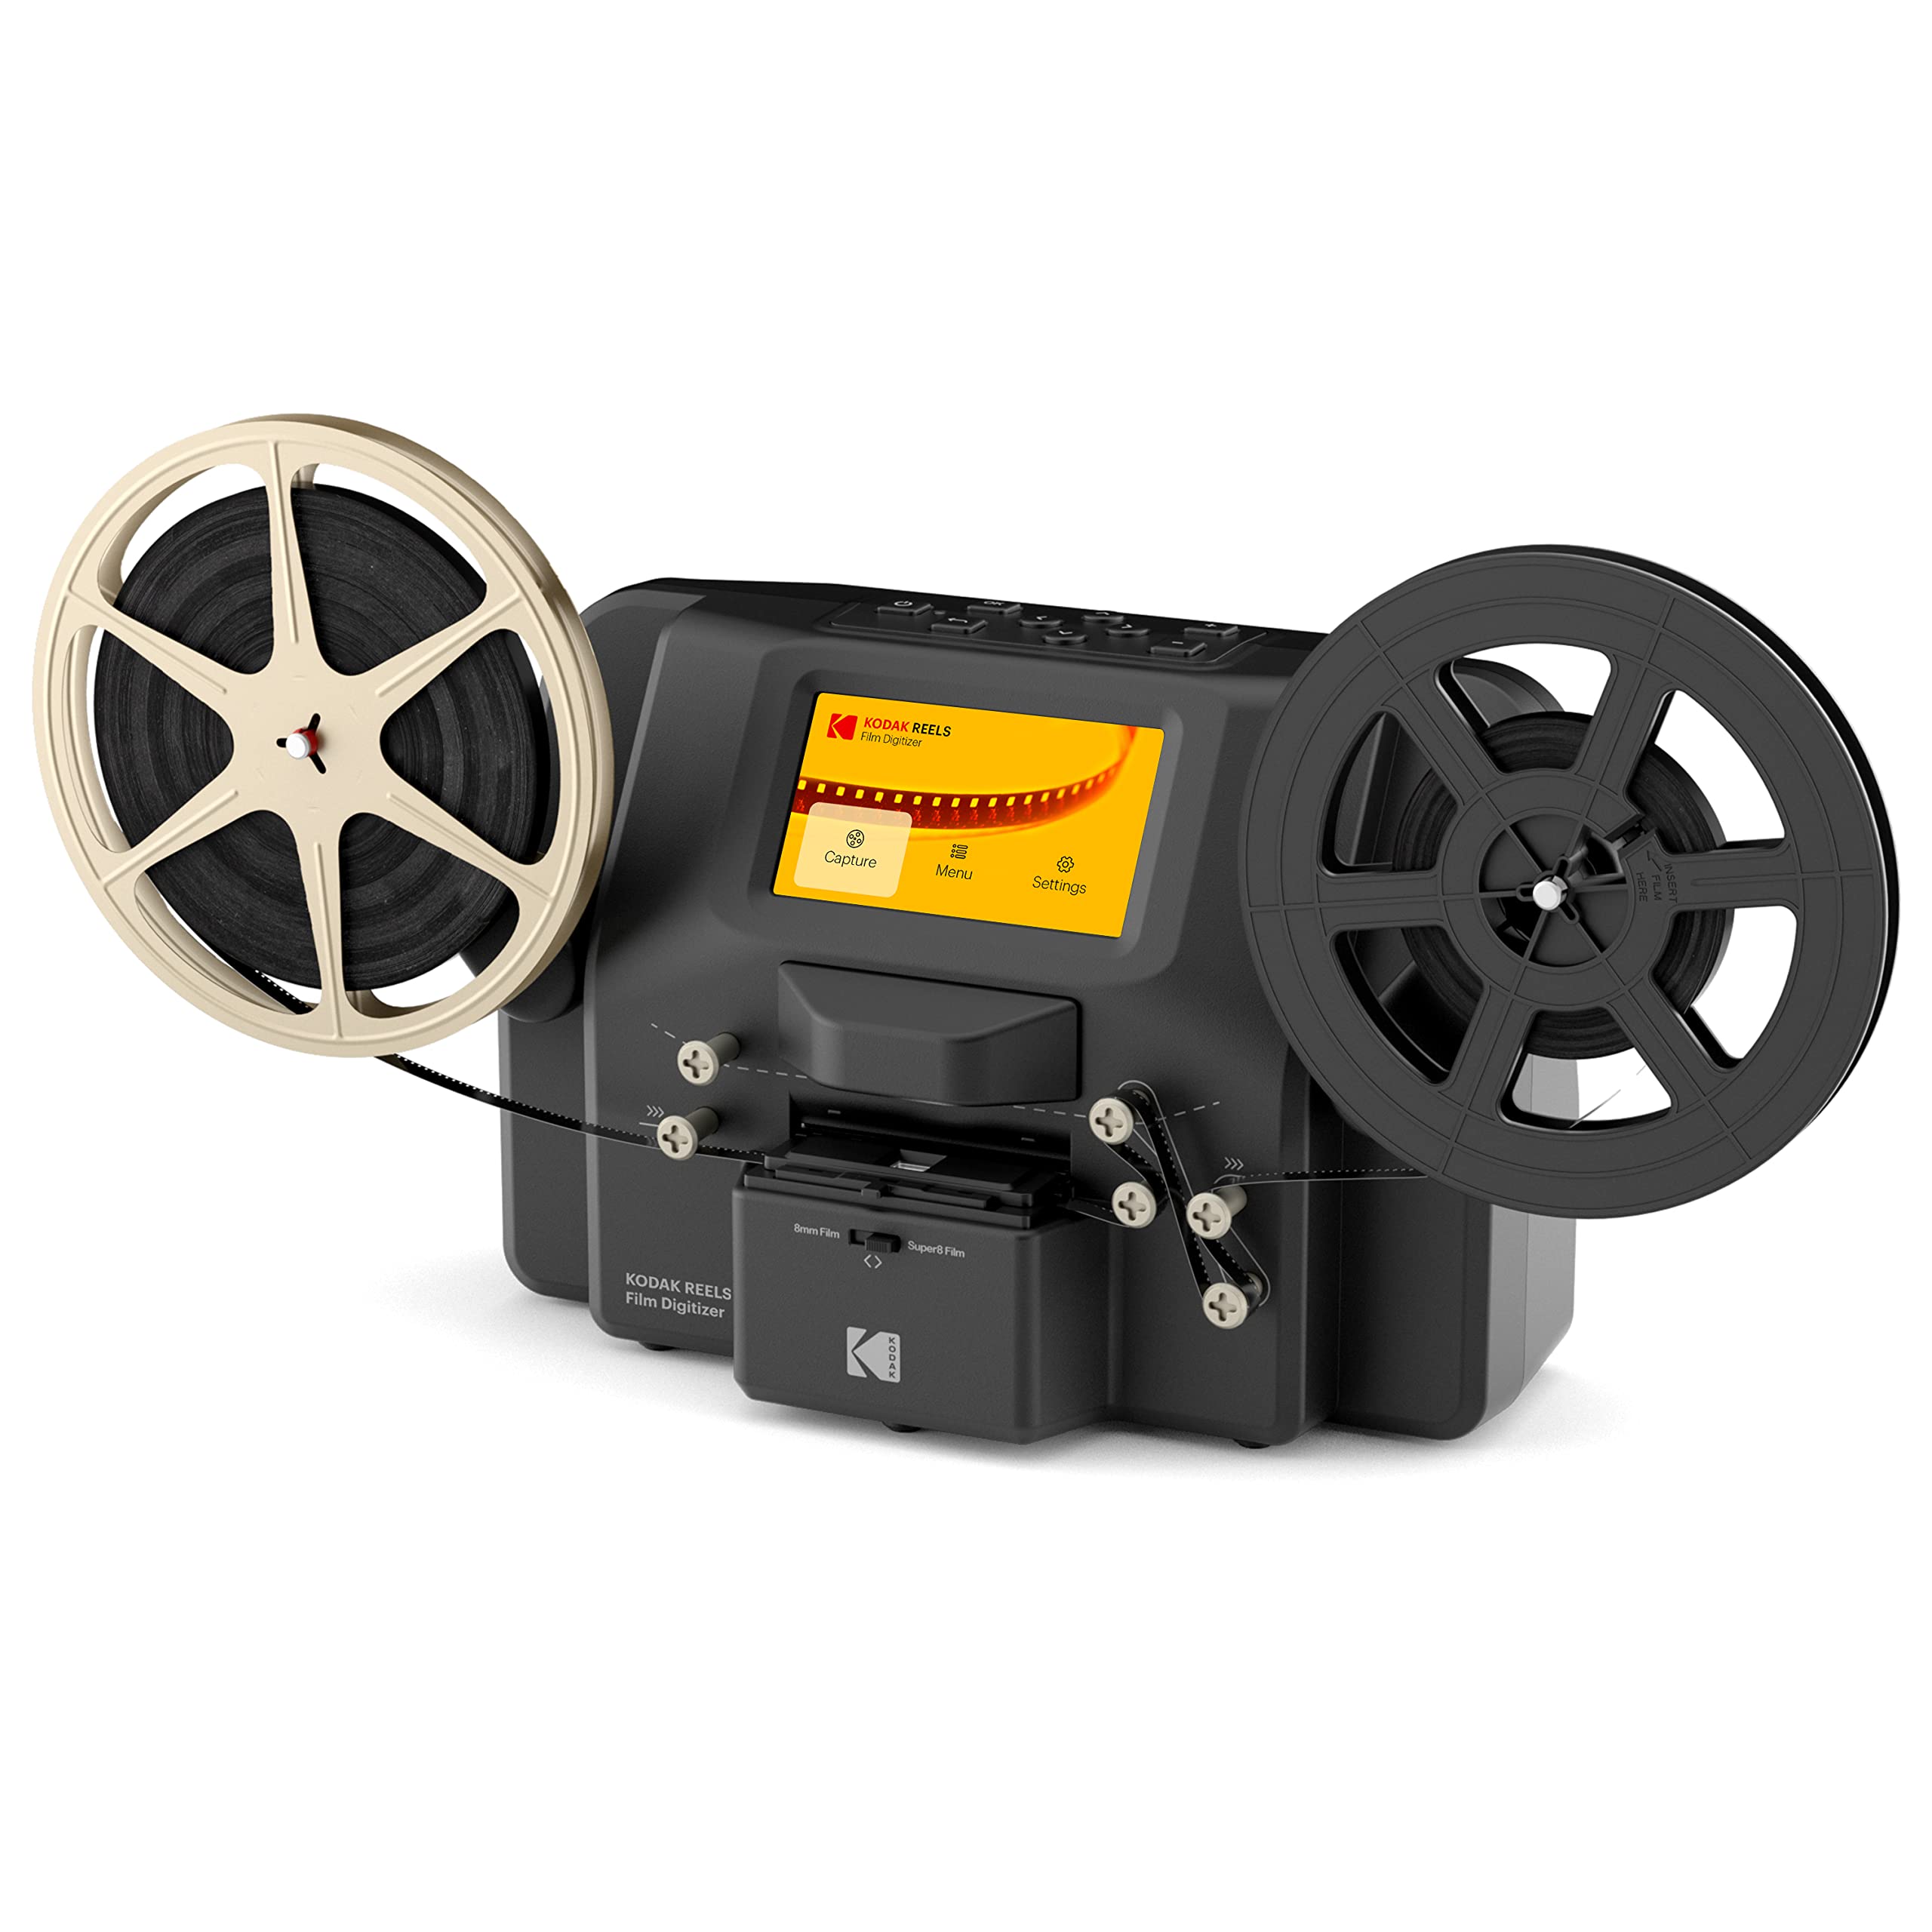 Kodak REELS 8mm & スーパー 8 フィルムデジタイザーコンバーター Big 5 スクリーン付き...